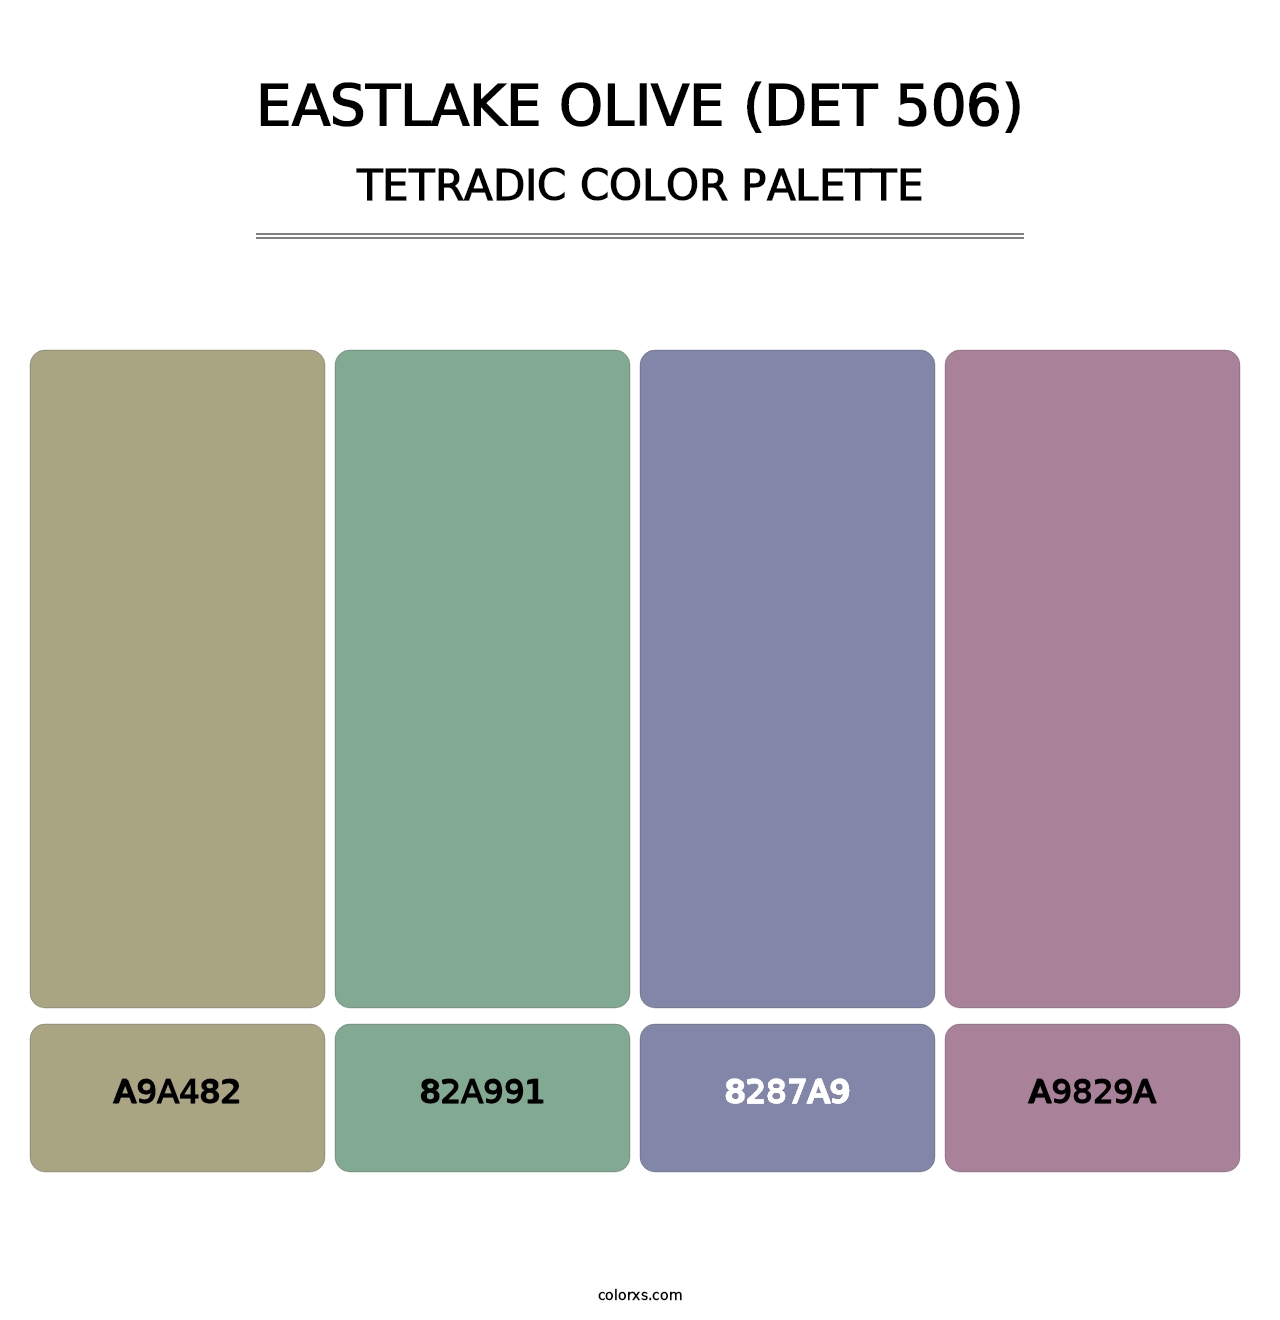 Eastlake Olive (DET 506) - Tetradic Color Palette